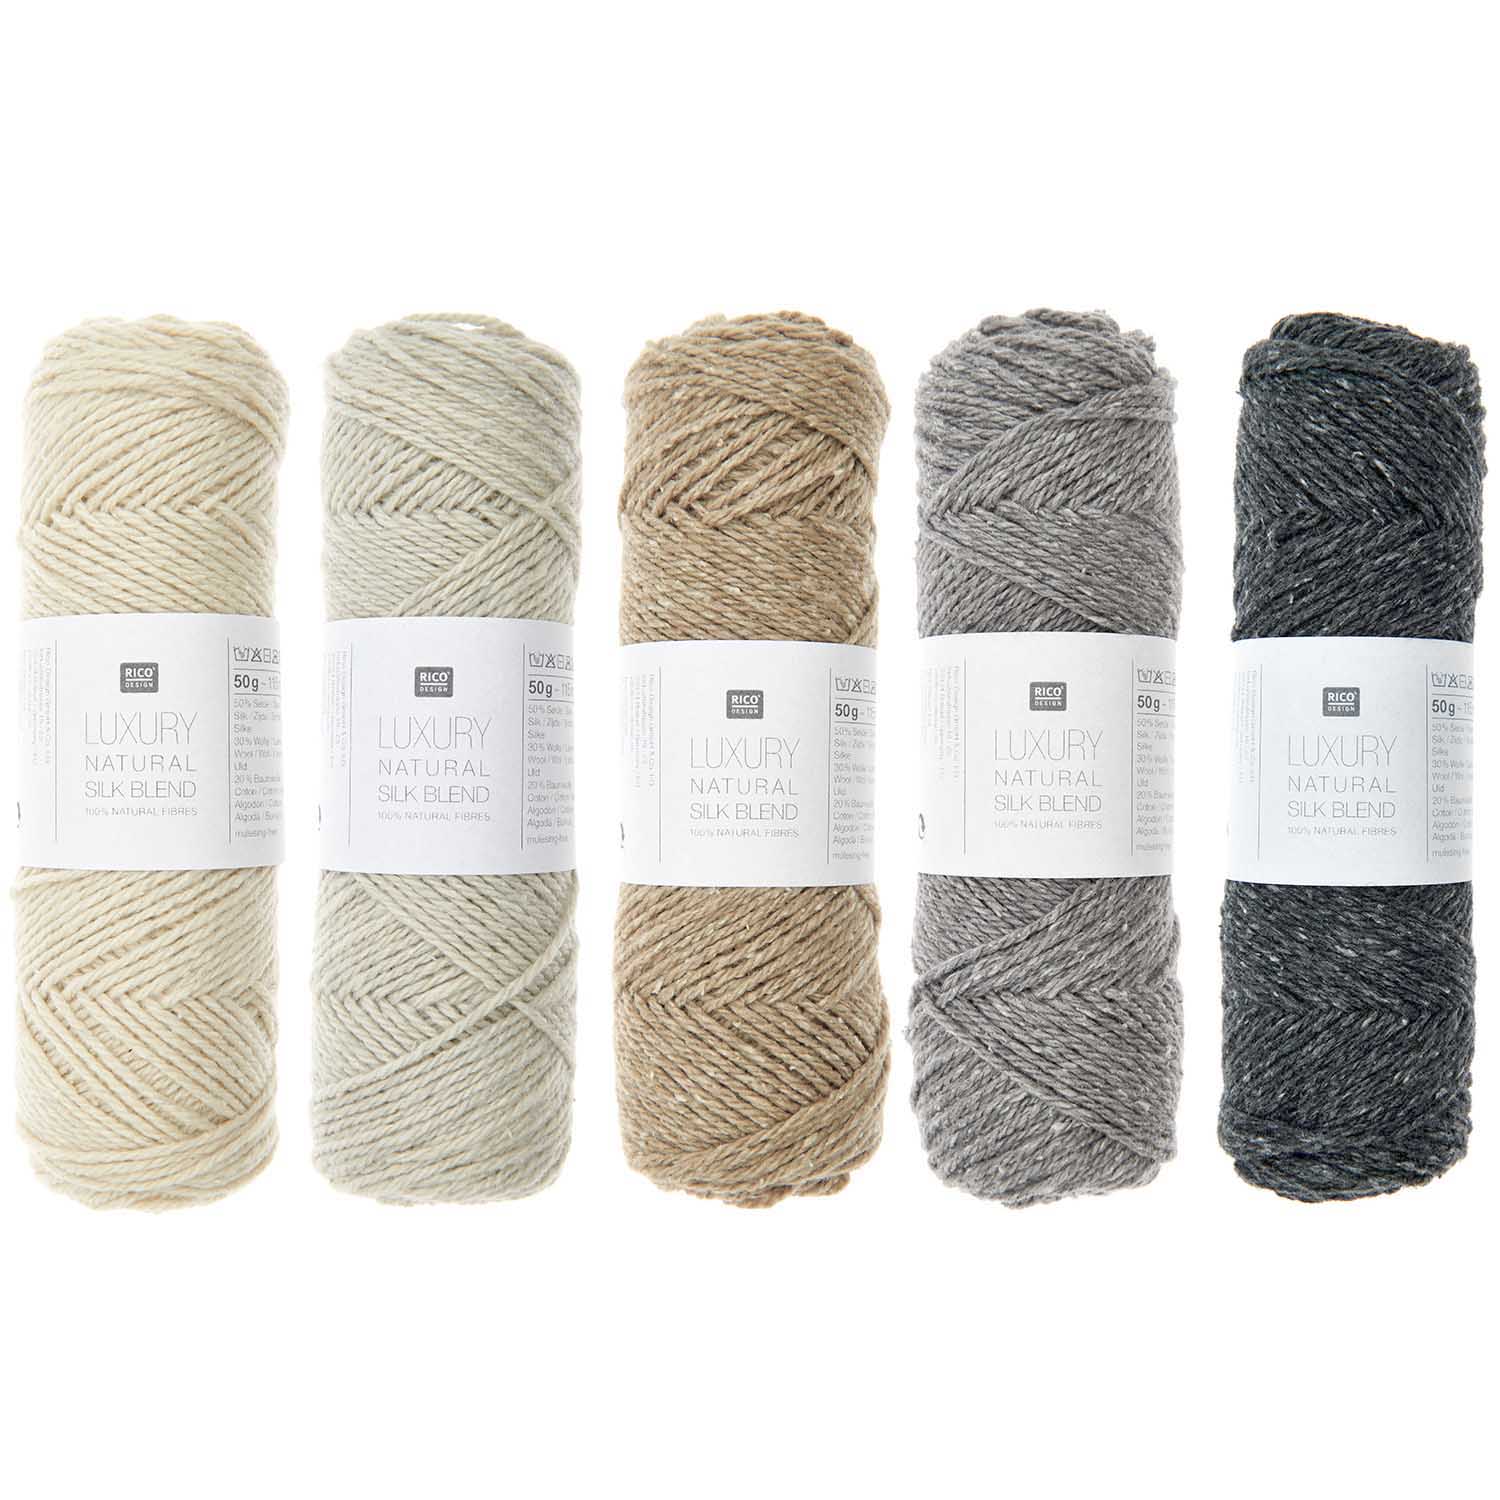 Luxury Natural Silk Blend  Wolle 50% Seide 30% Wolle 20% Baumwolle  50g / 115m